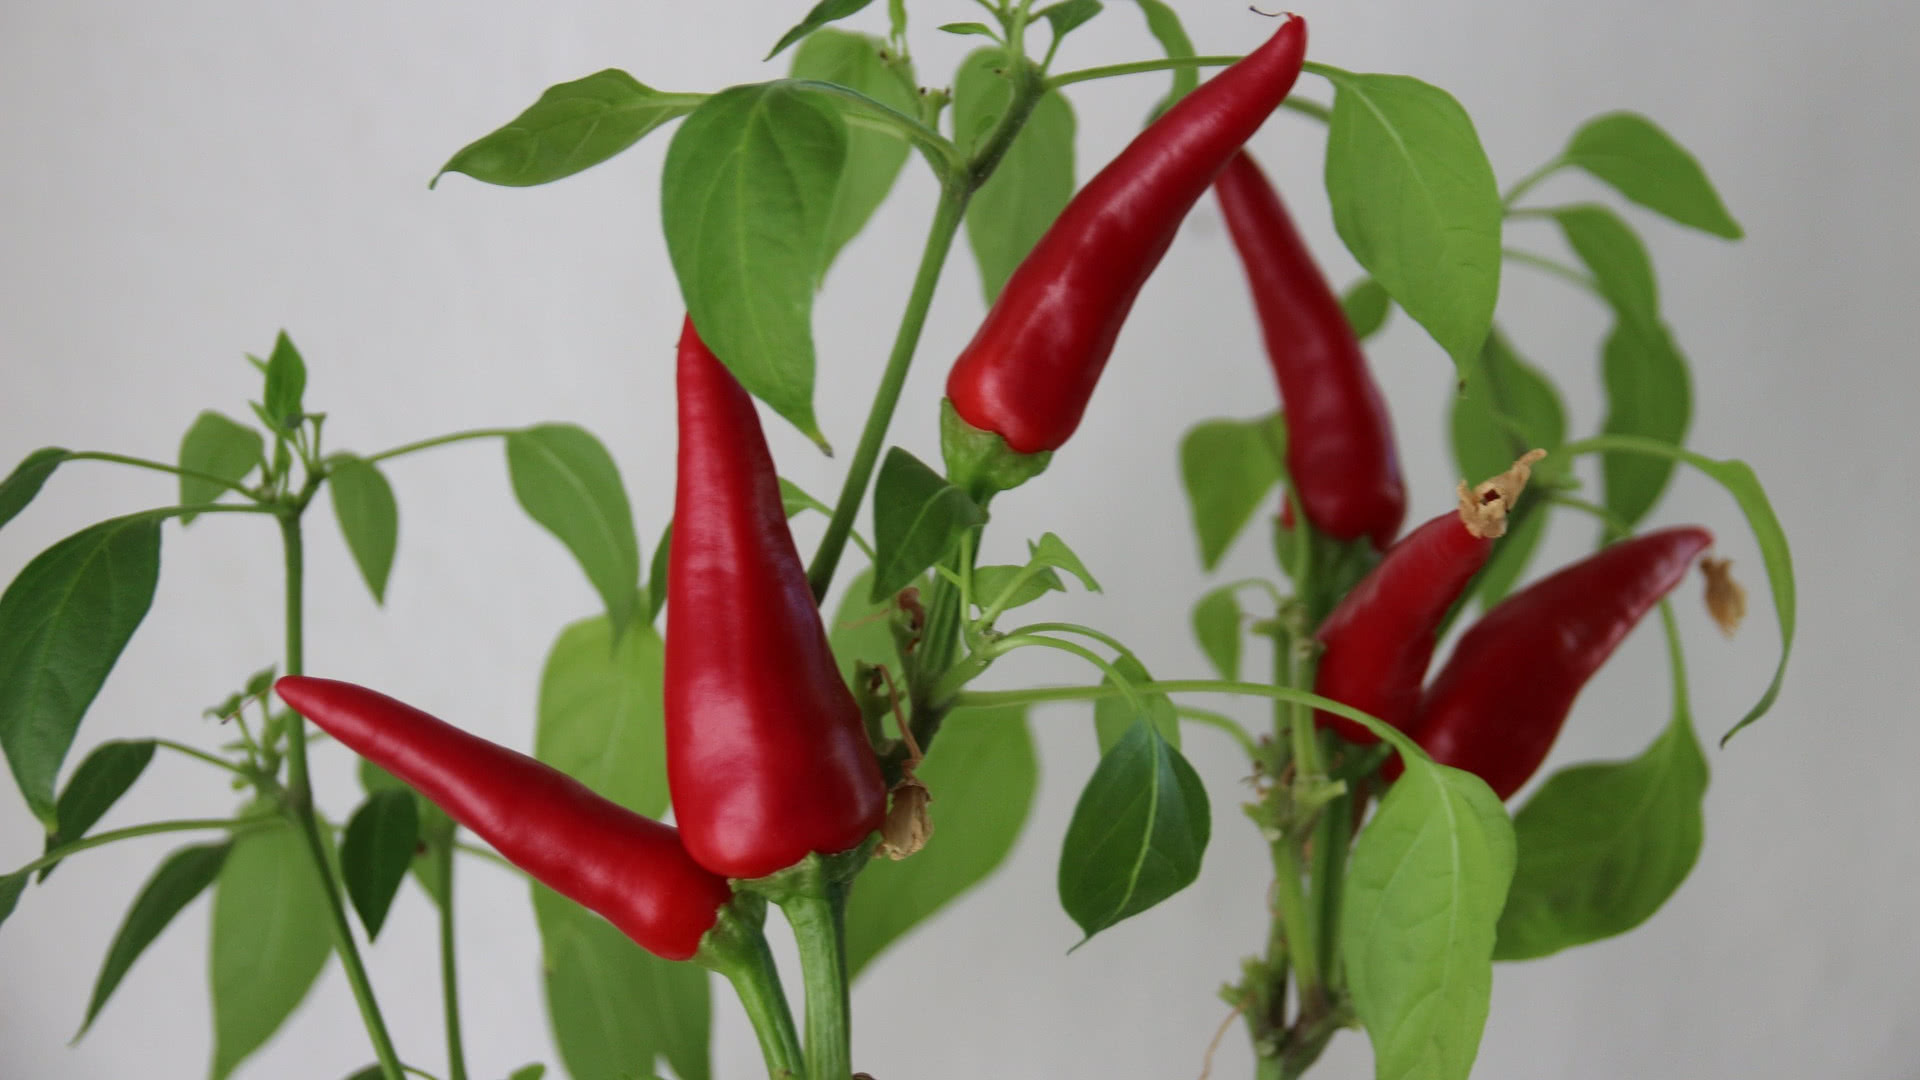 Thai chilli plant indoors